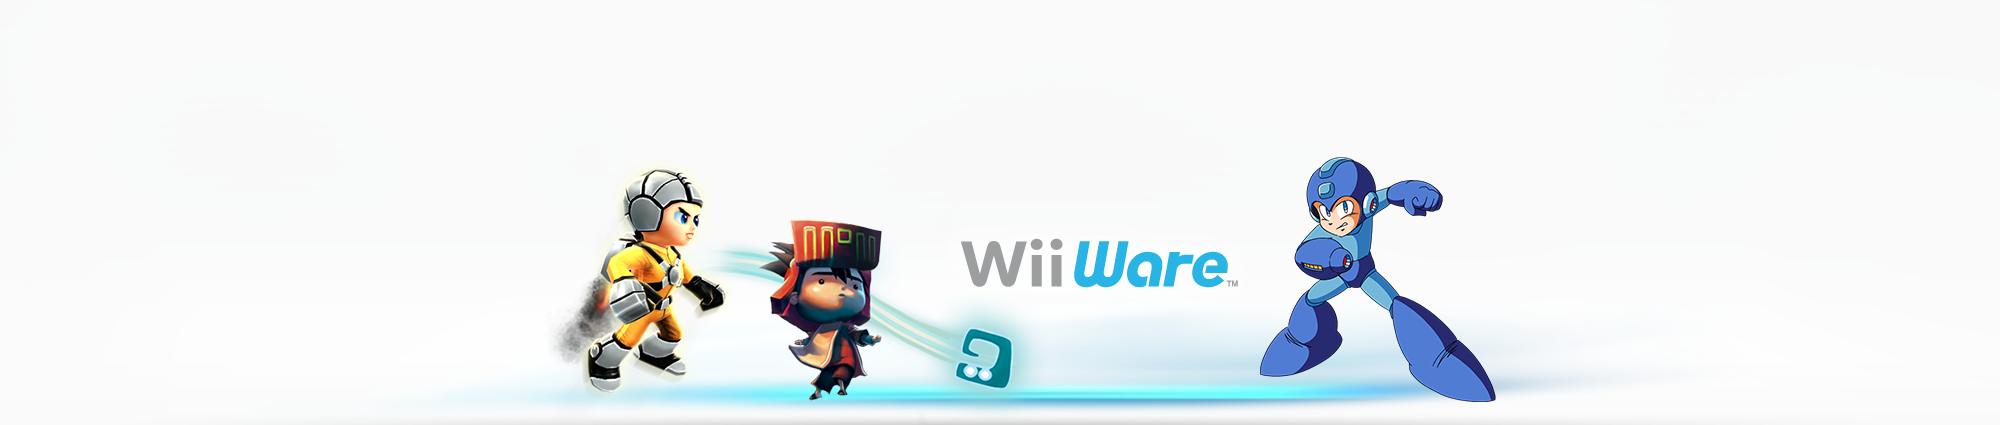 Descarga juegos en Wii